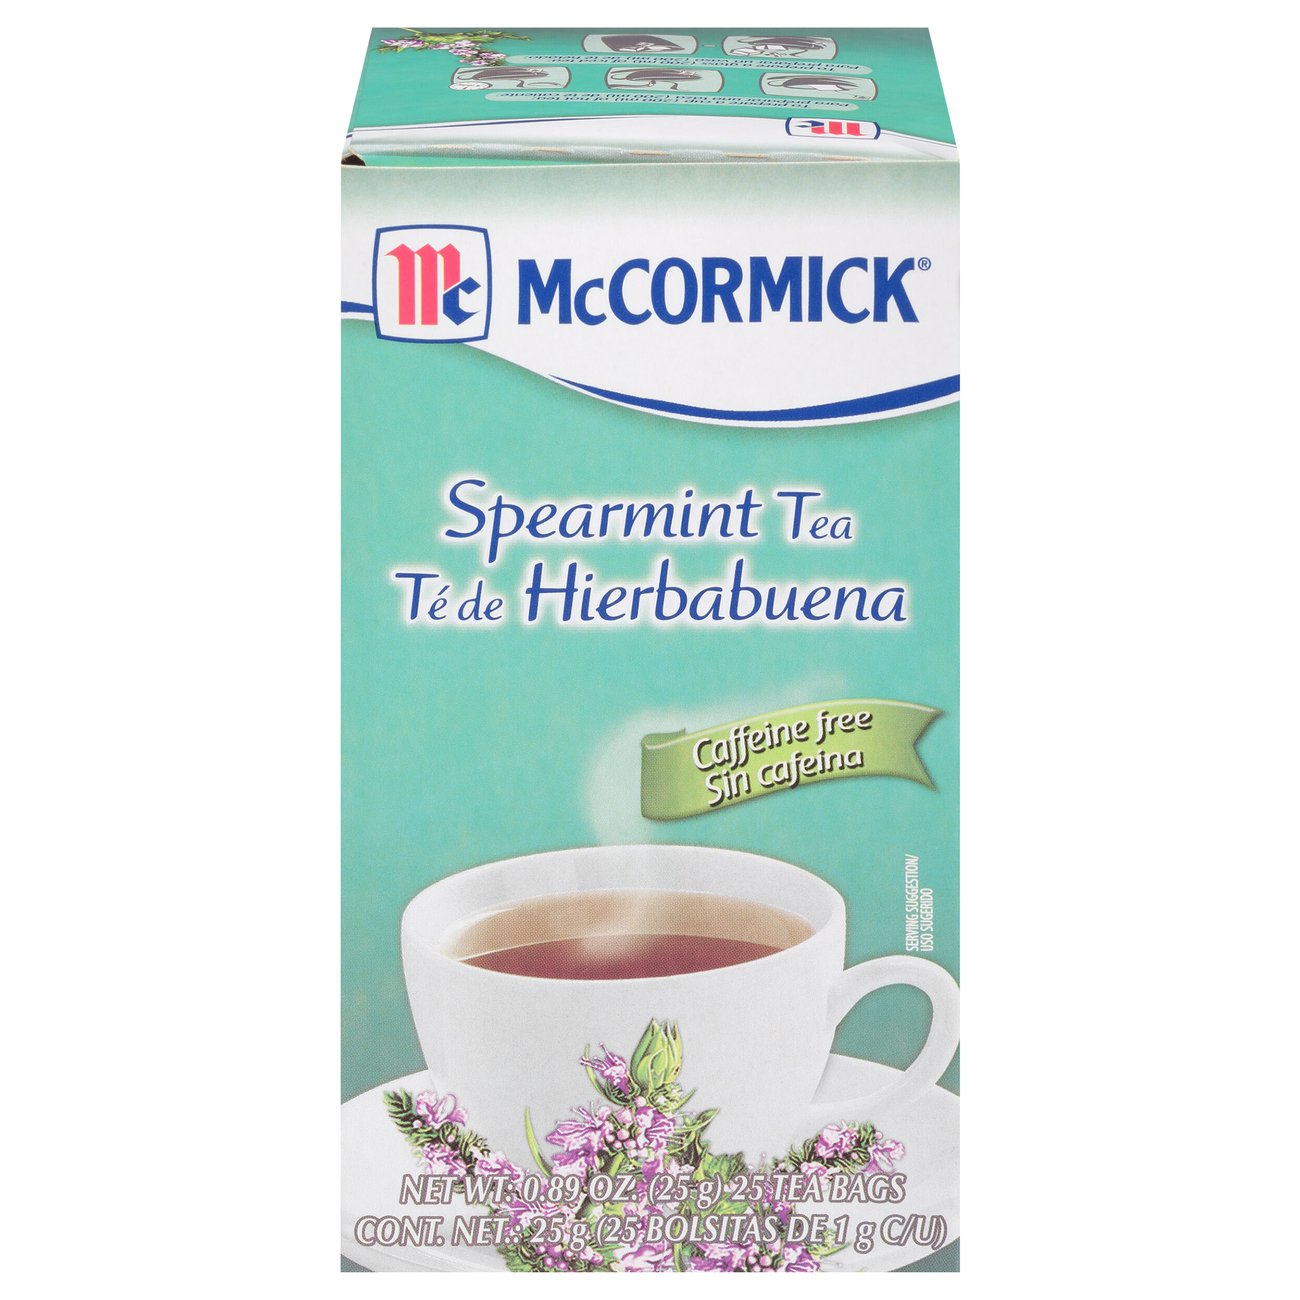 Spearmint Tea – The H Life